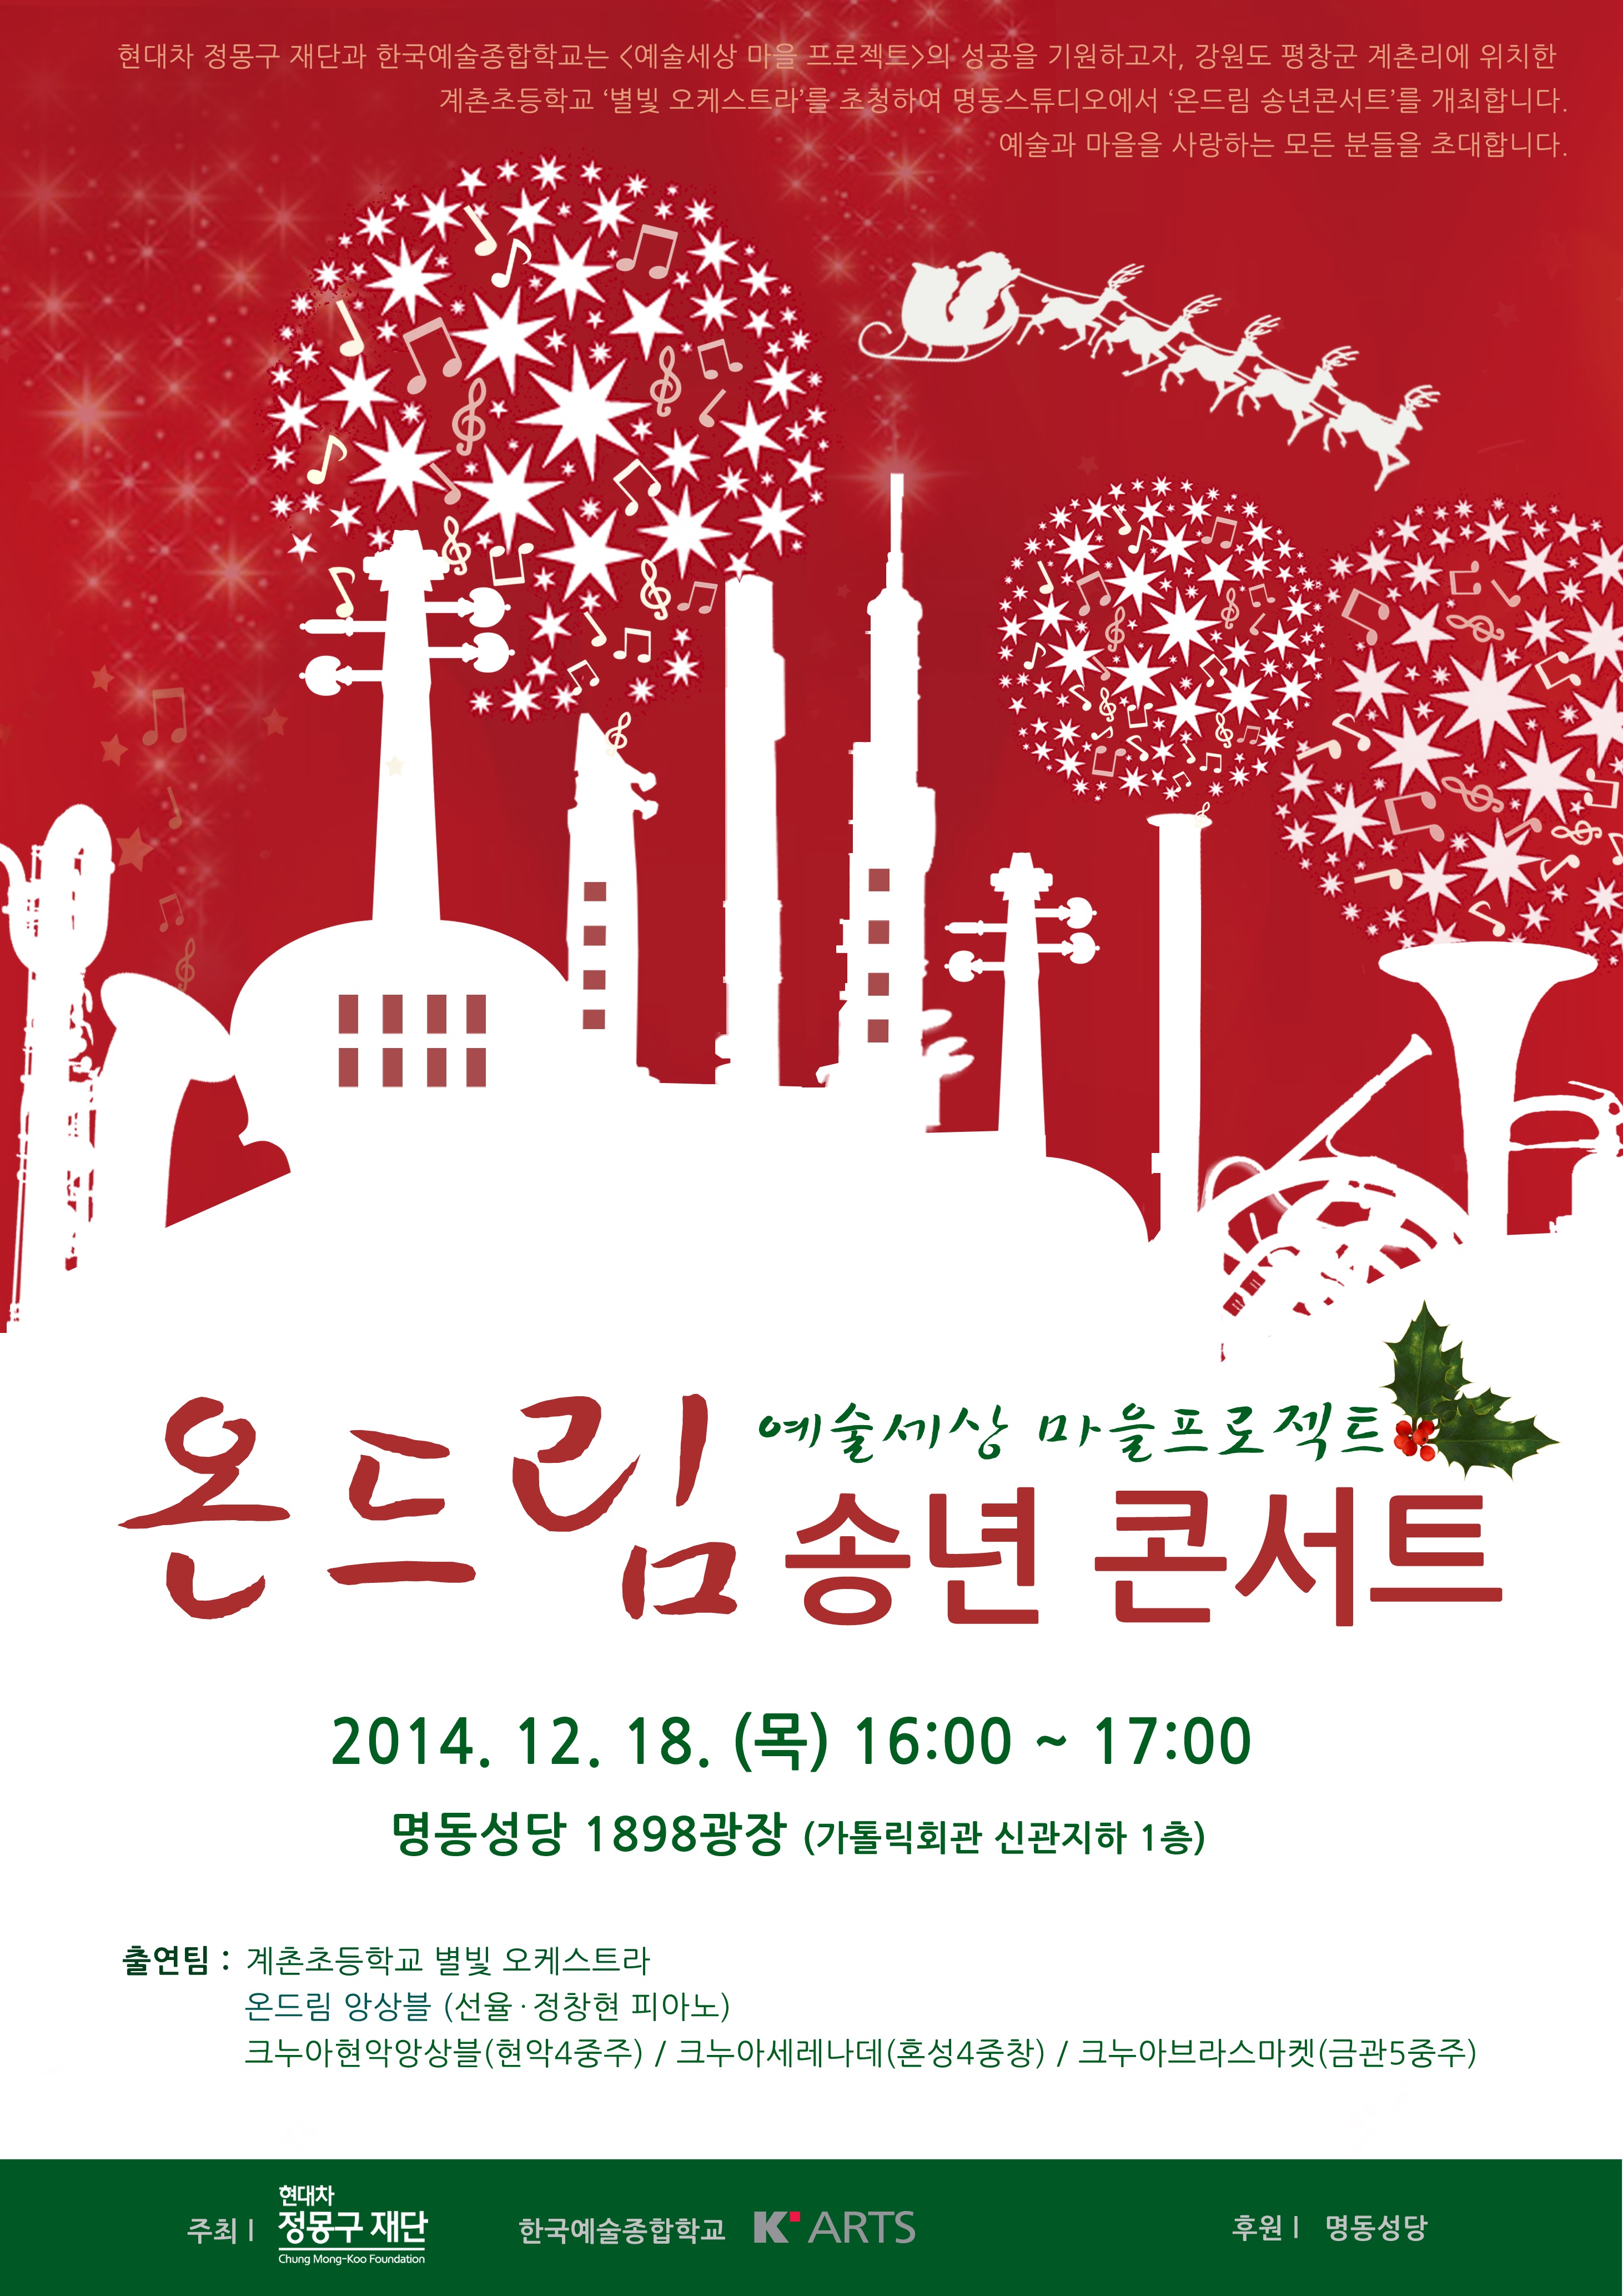 한국예술종합학교-현대자동차 정몽구 재단 예술세상 마을 프로젝트 온드림 송년콘서트 포스터